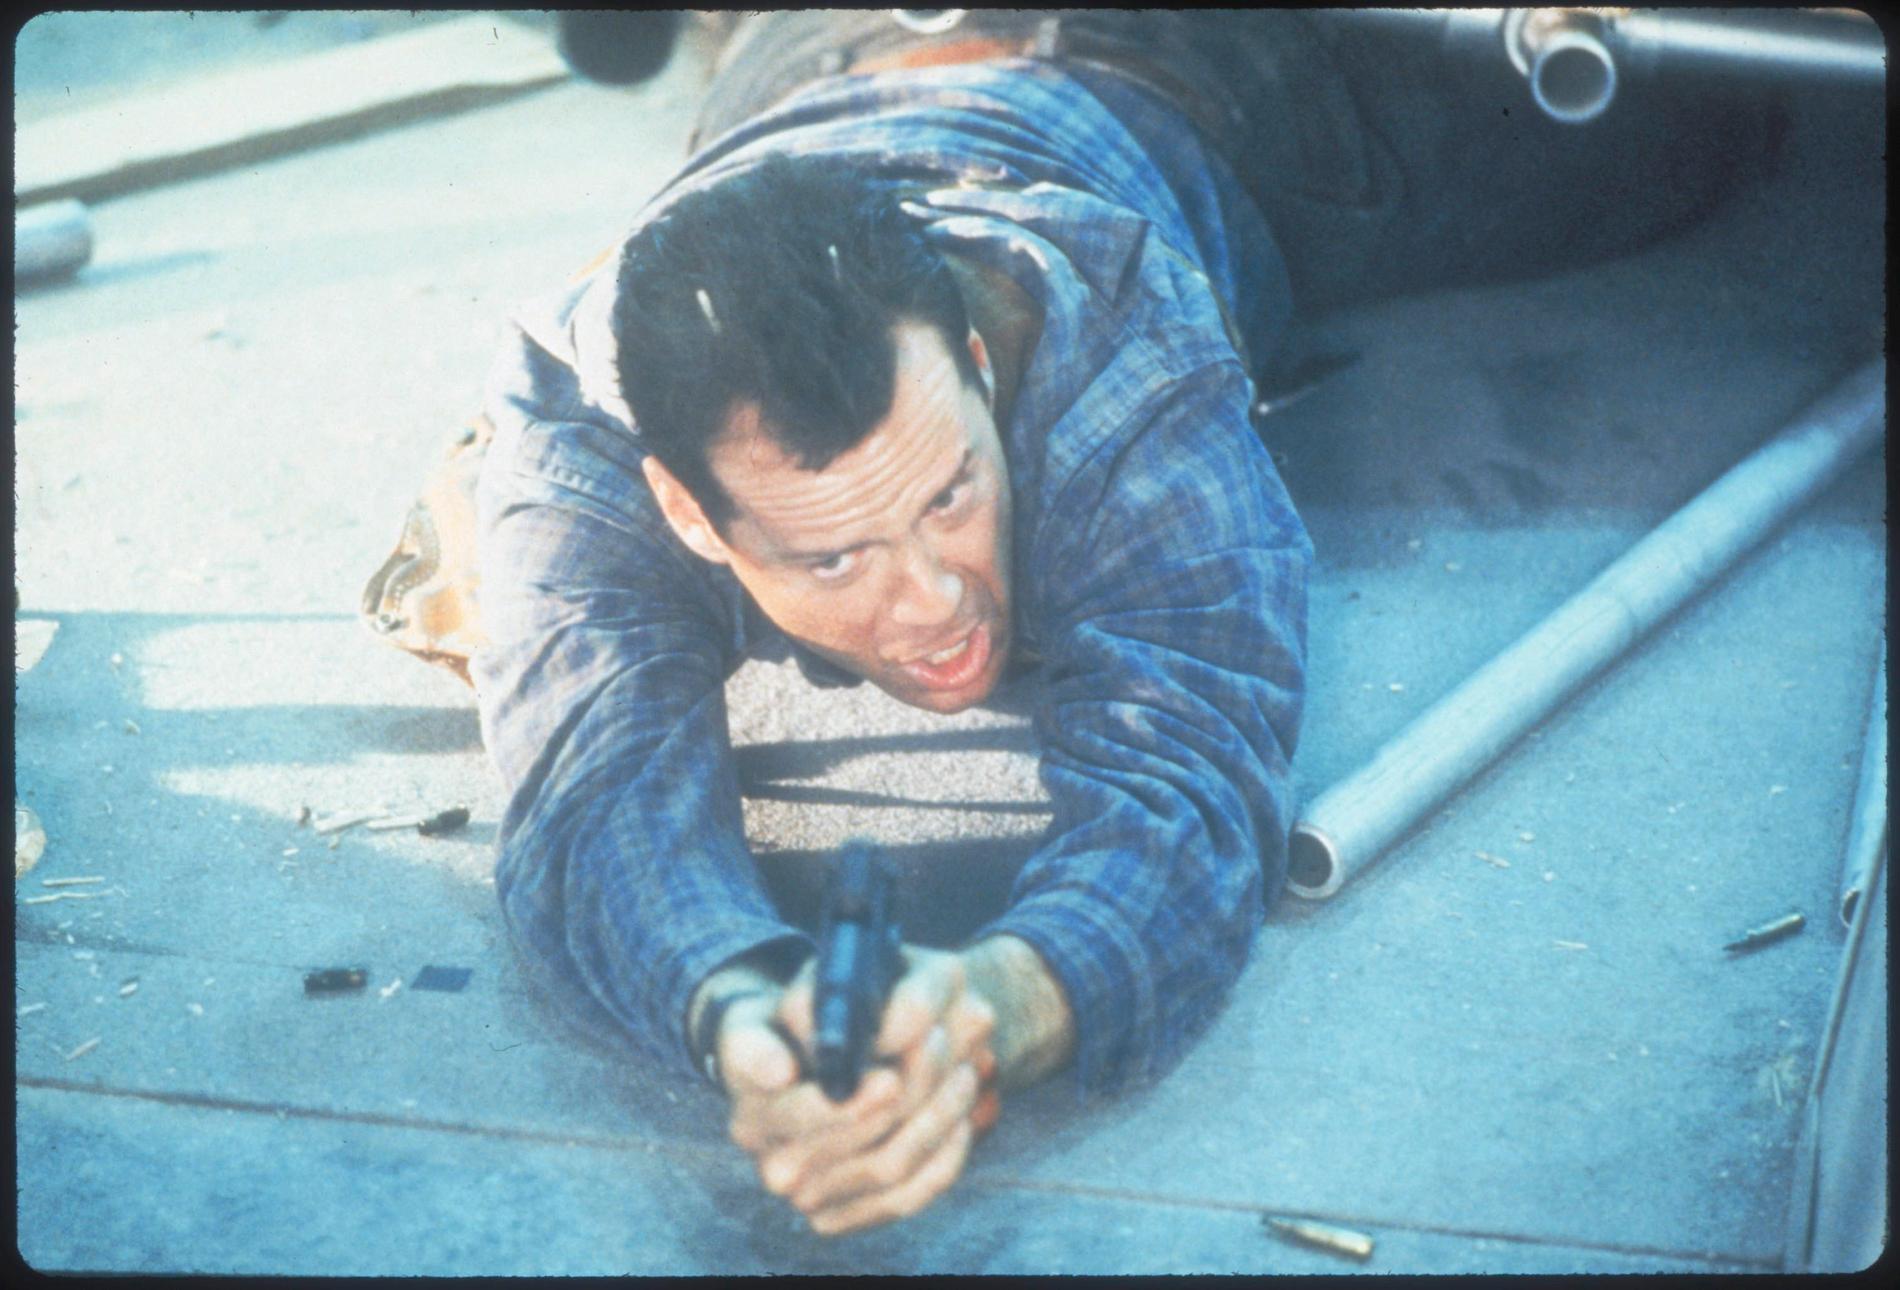 Bruce Willis har det stressigt i "Die hard". Pressbild.